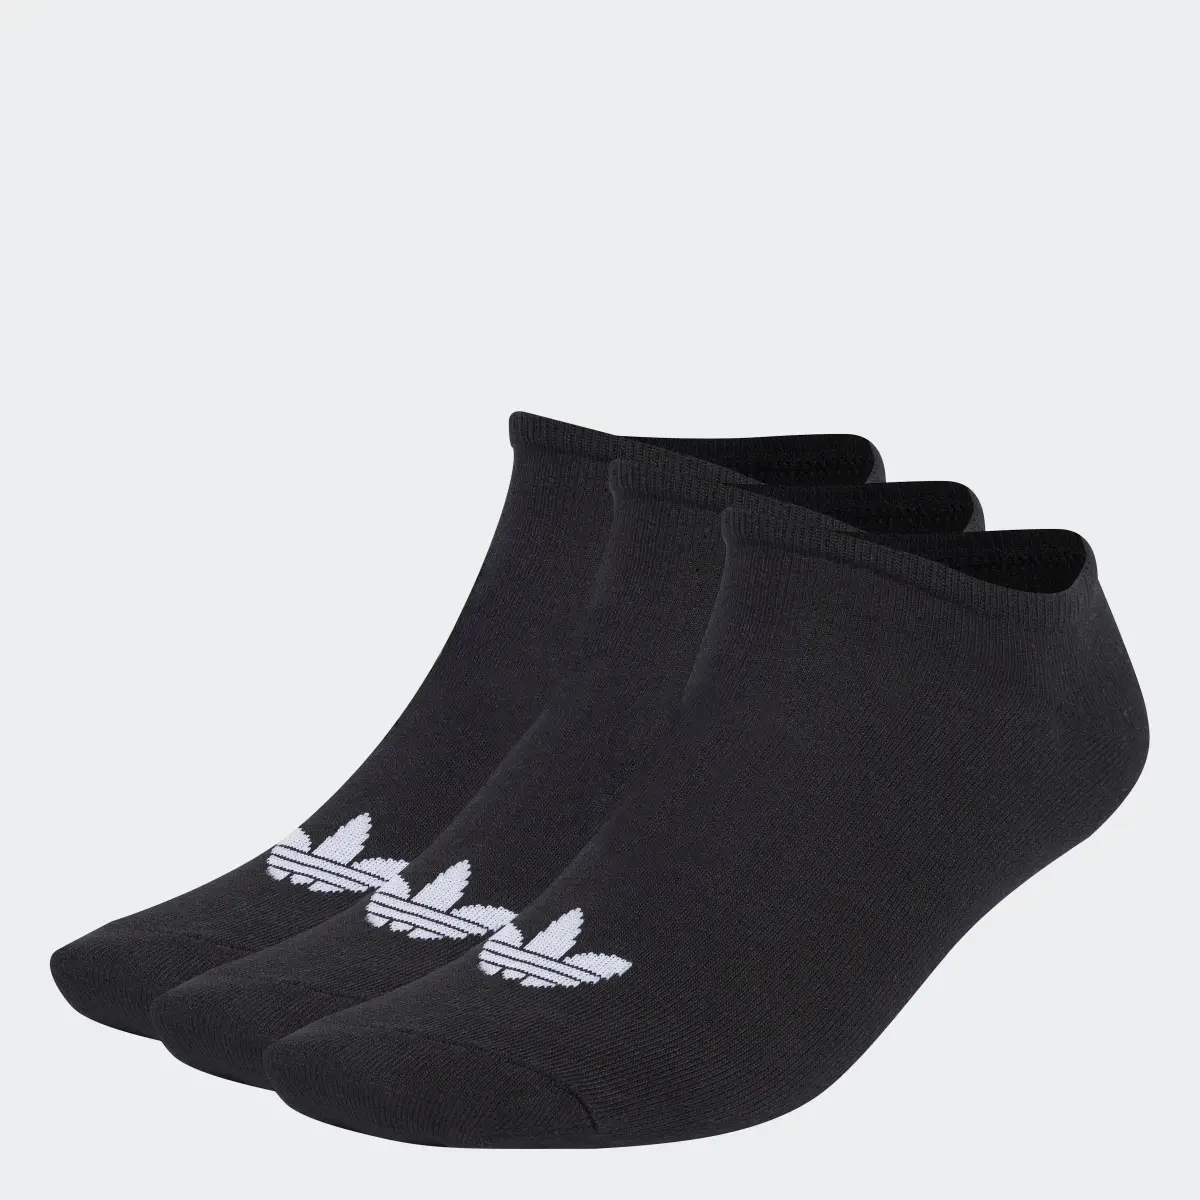 Adidas Trefoil Liner Socken, 6 Paar. 1